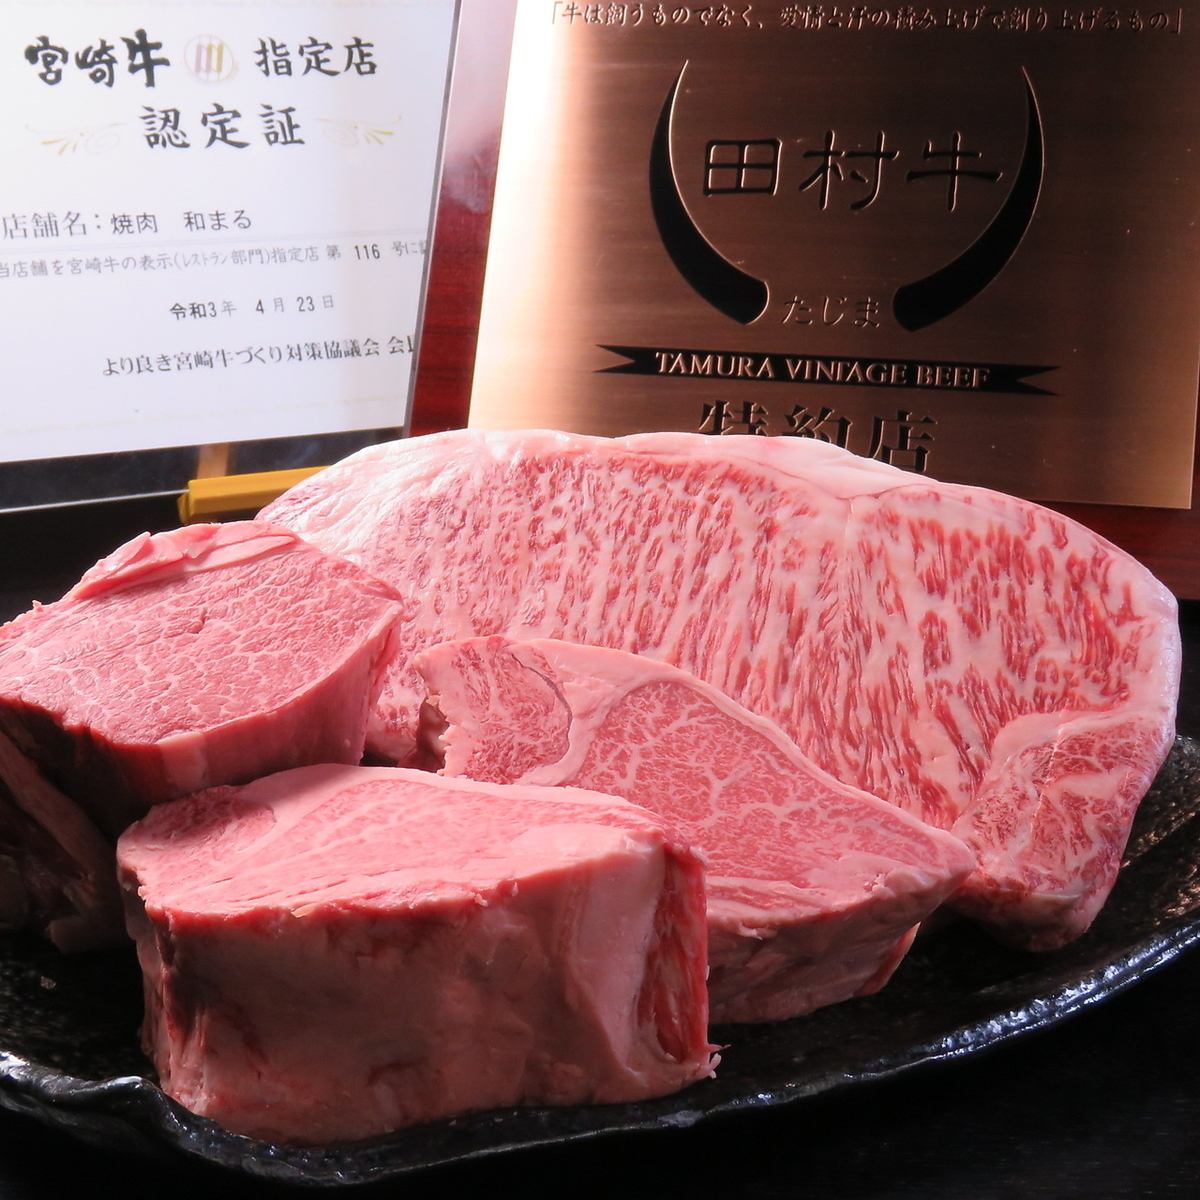 能以合理的价格品尝到日本有名的和牛的餐厅